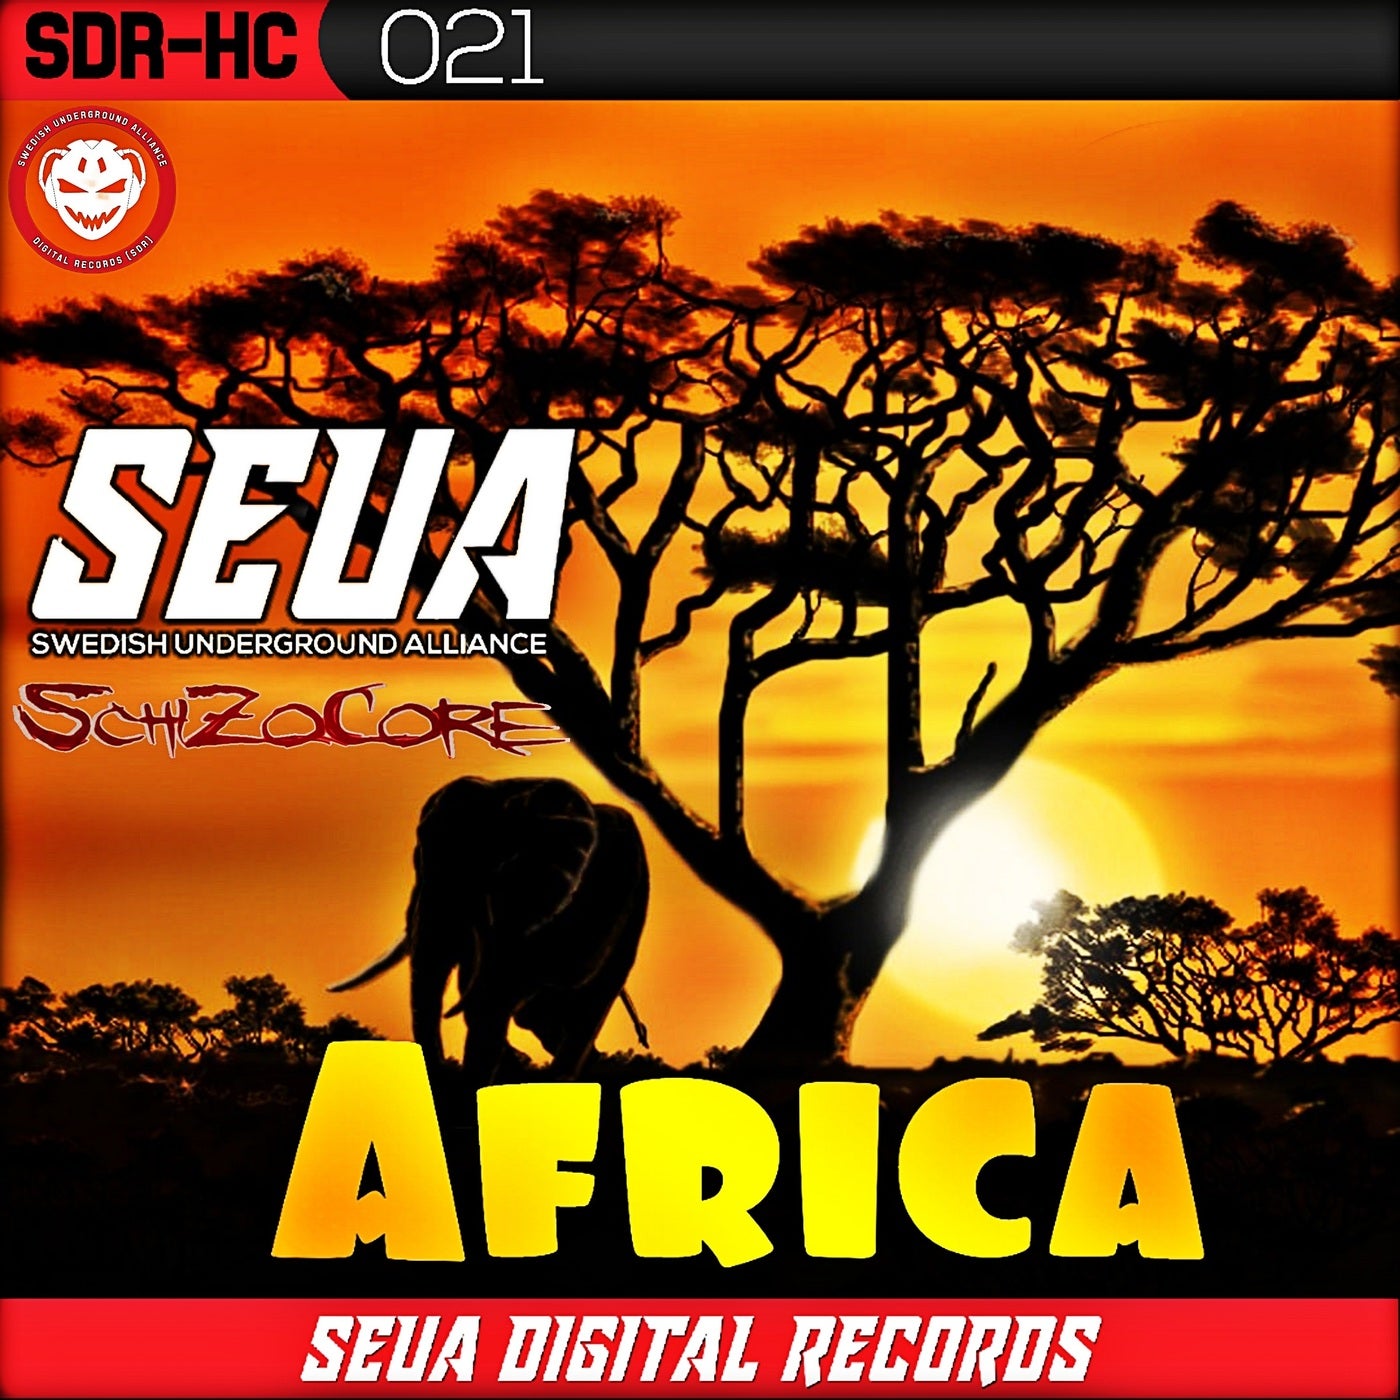 SchizoCore - Africa [SEUA Digital Records]